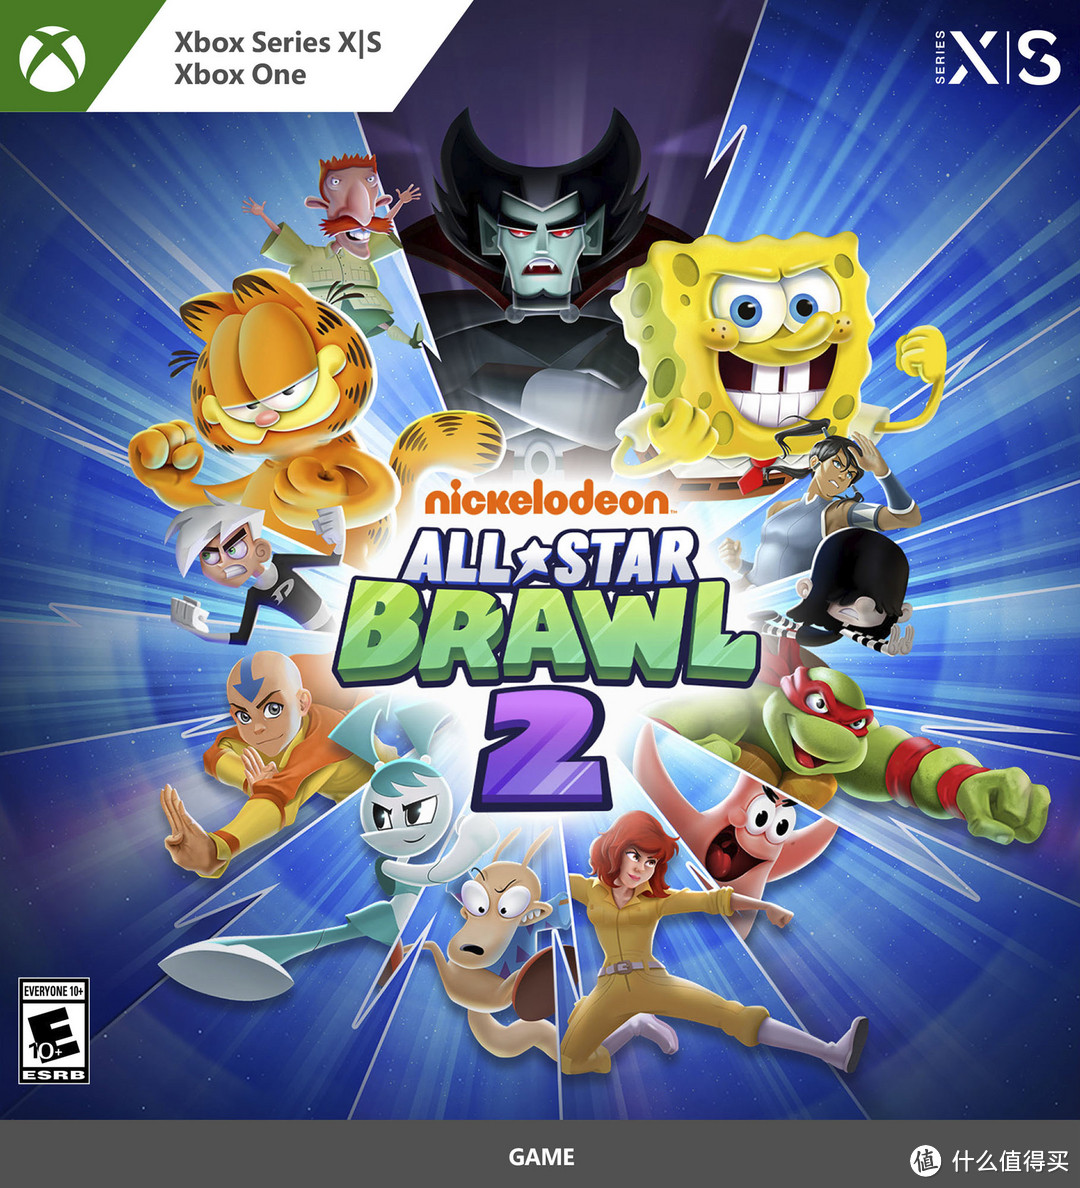 微软推出海绵宝宝主题Xbox Series X限定主机